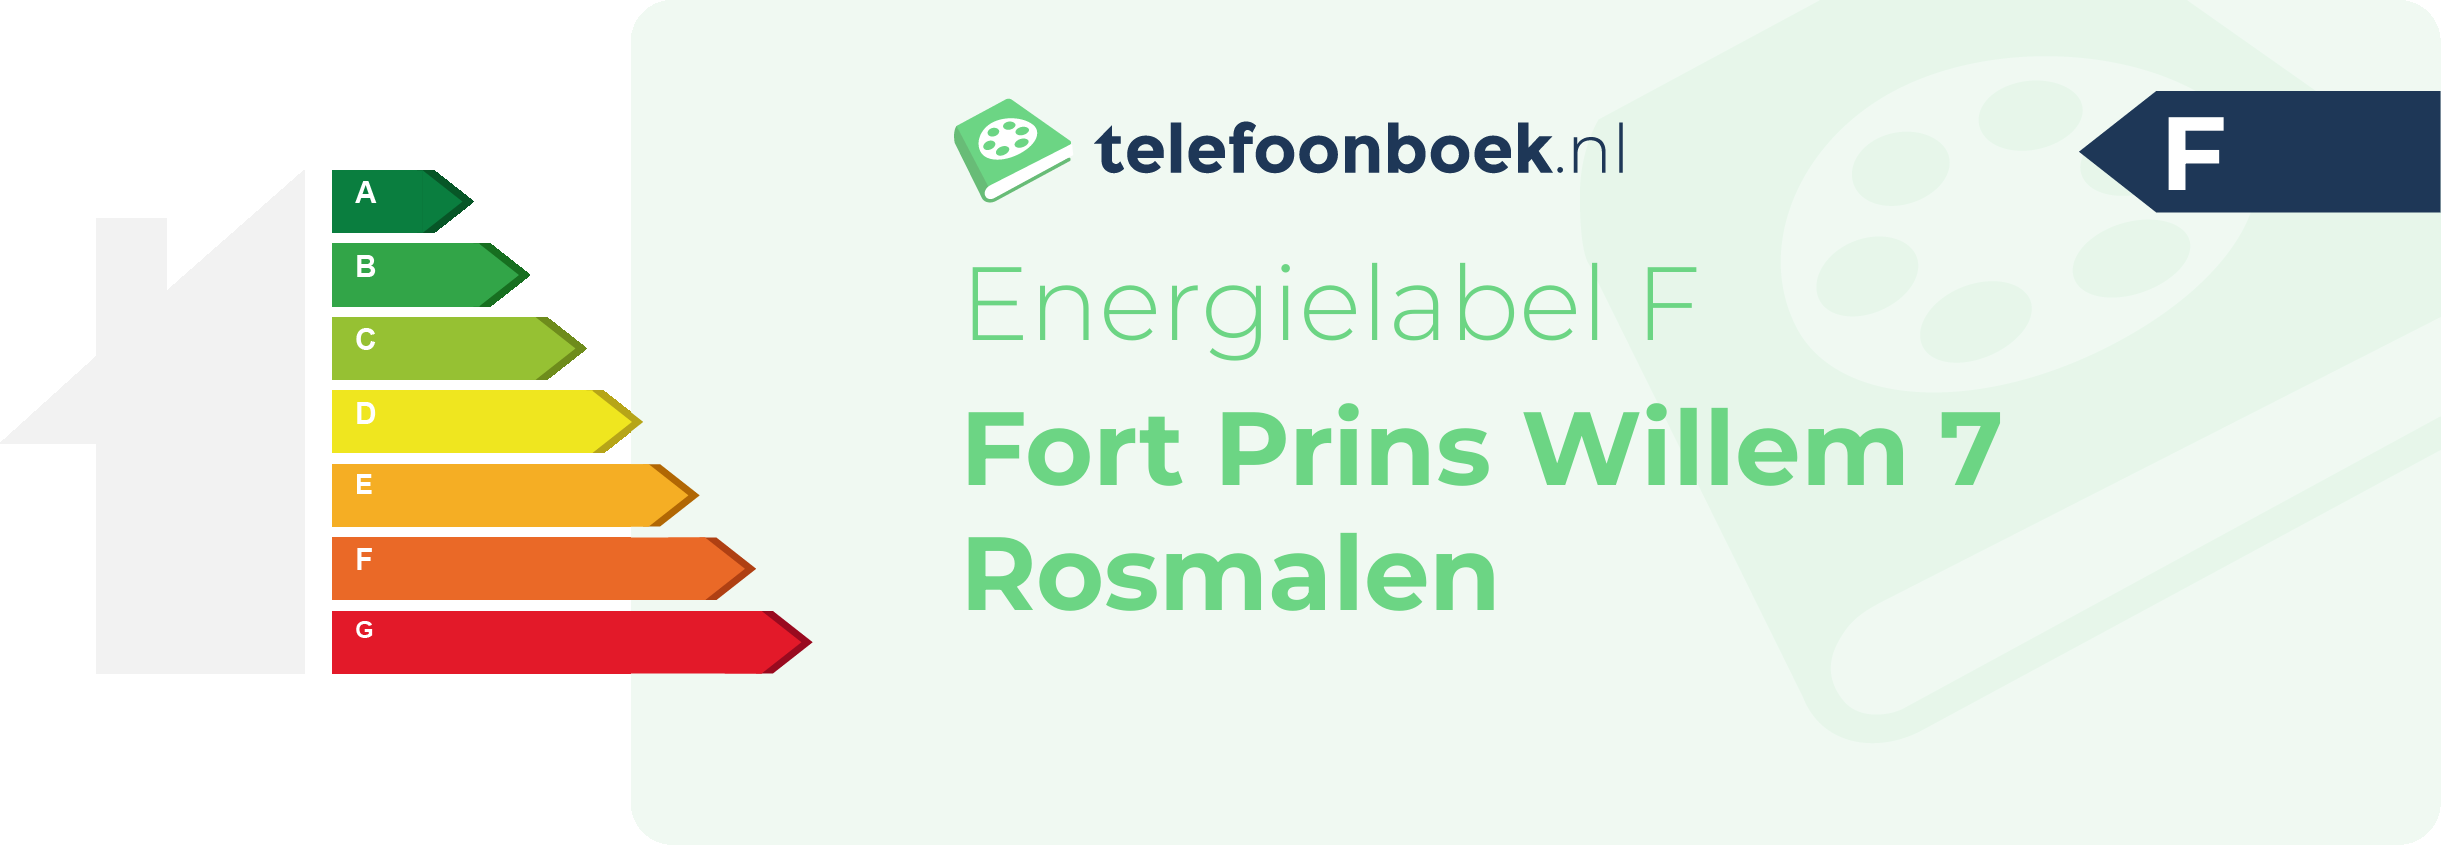 Energielabel Fort Prins Willem 7 Rosmalen